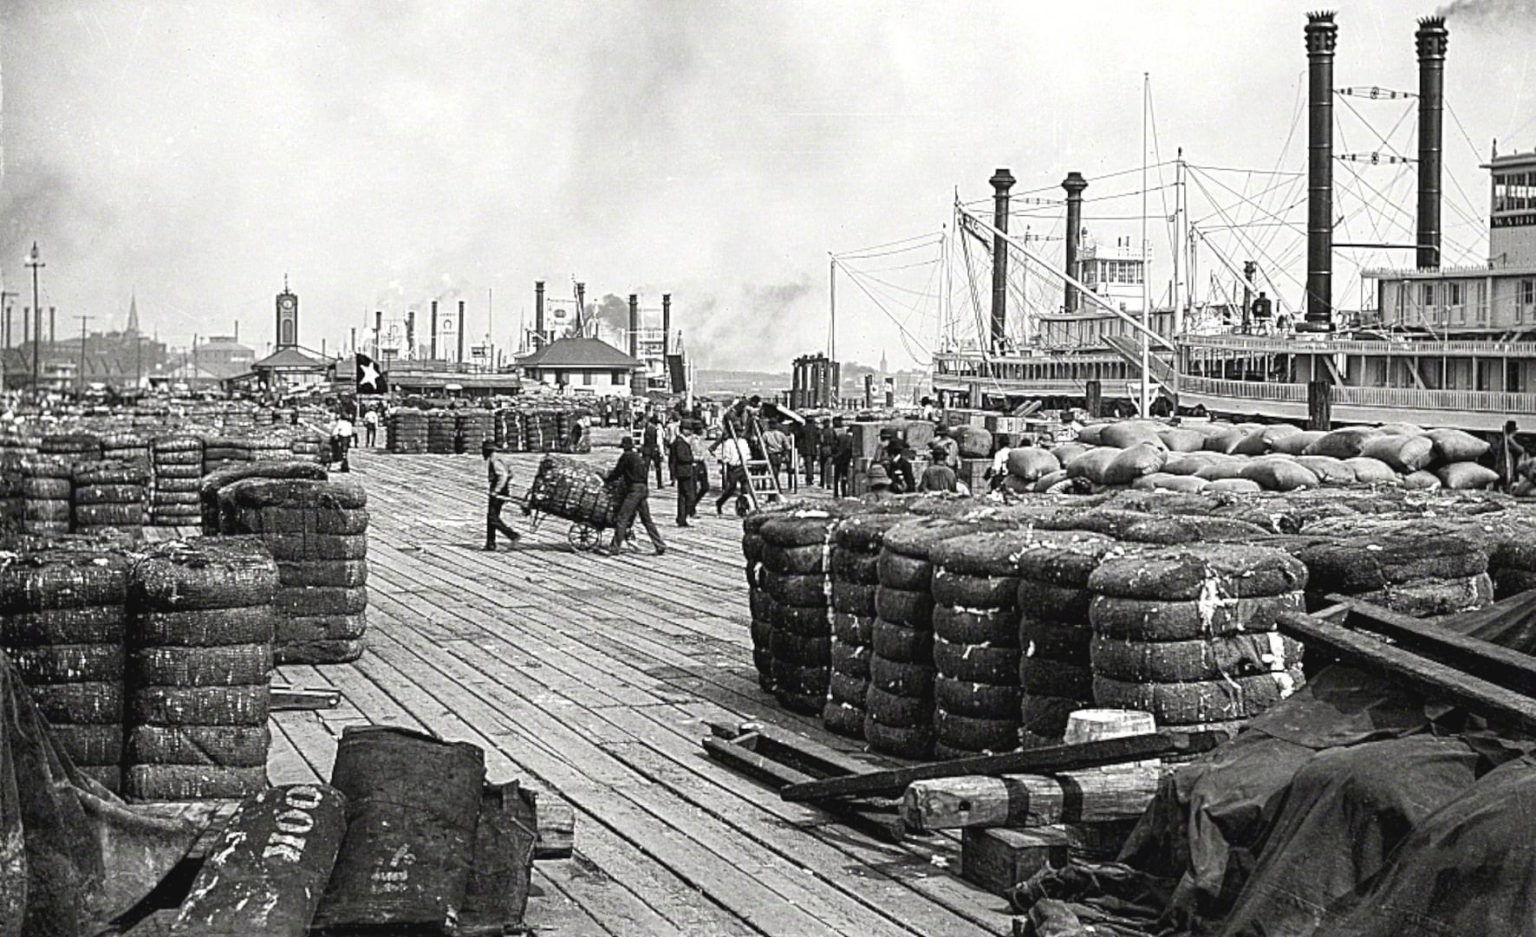 Cotton on the levee c. 1890